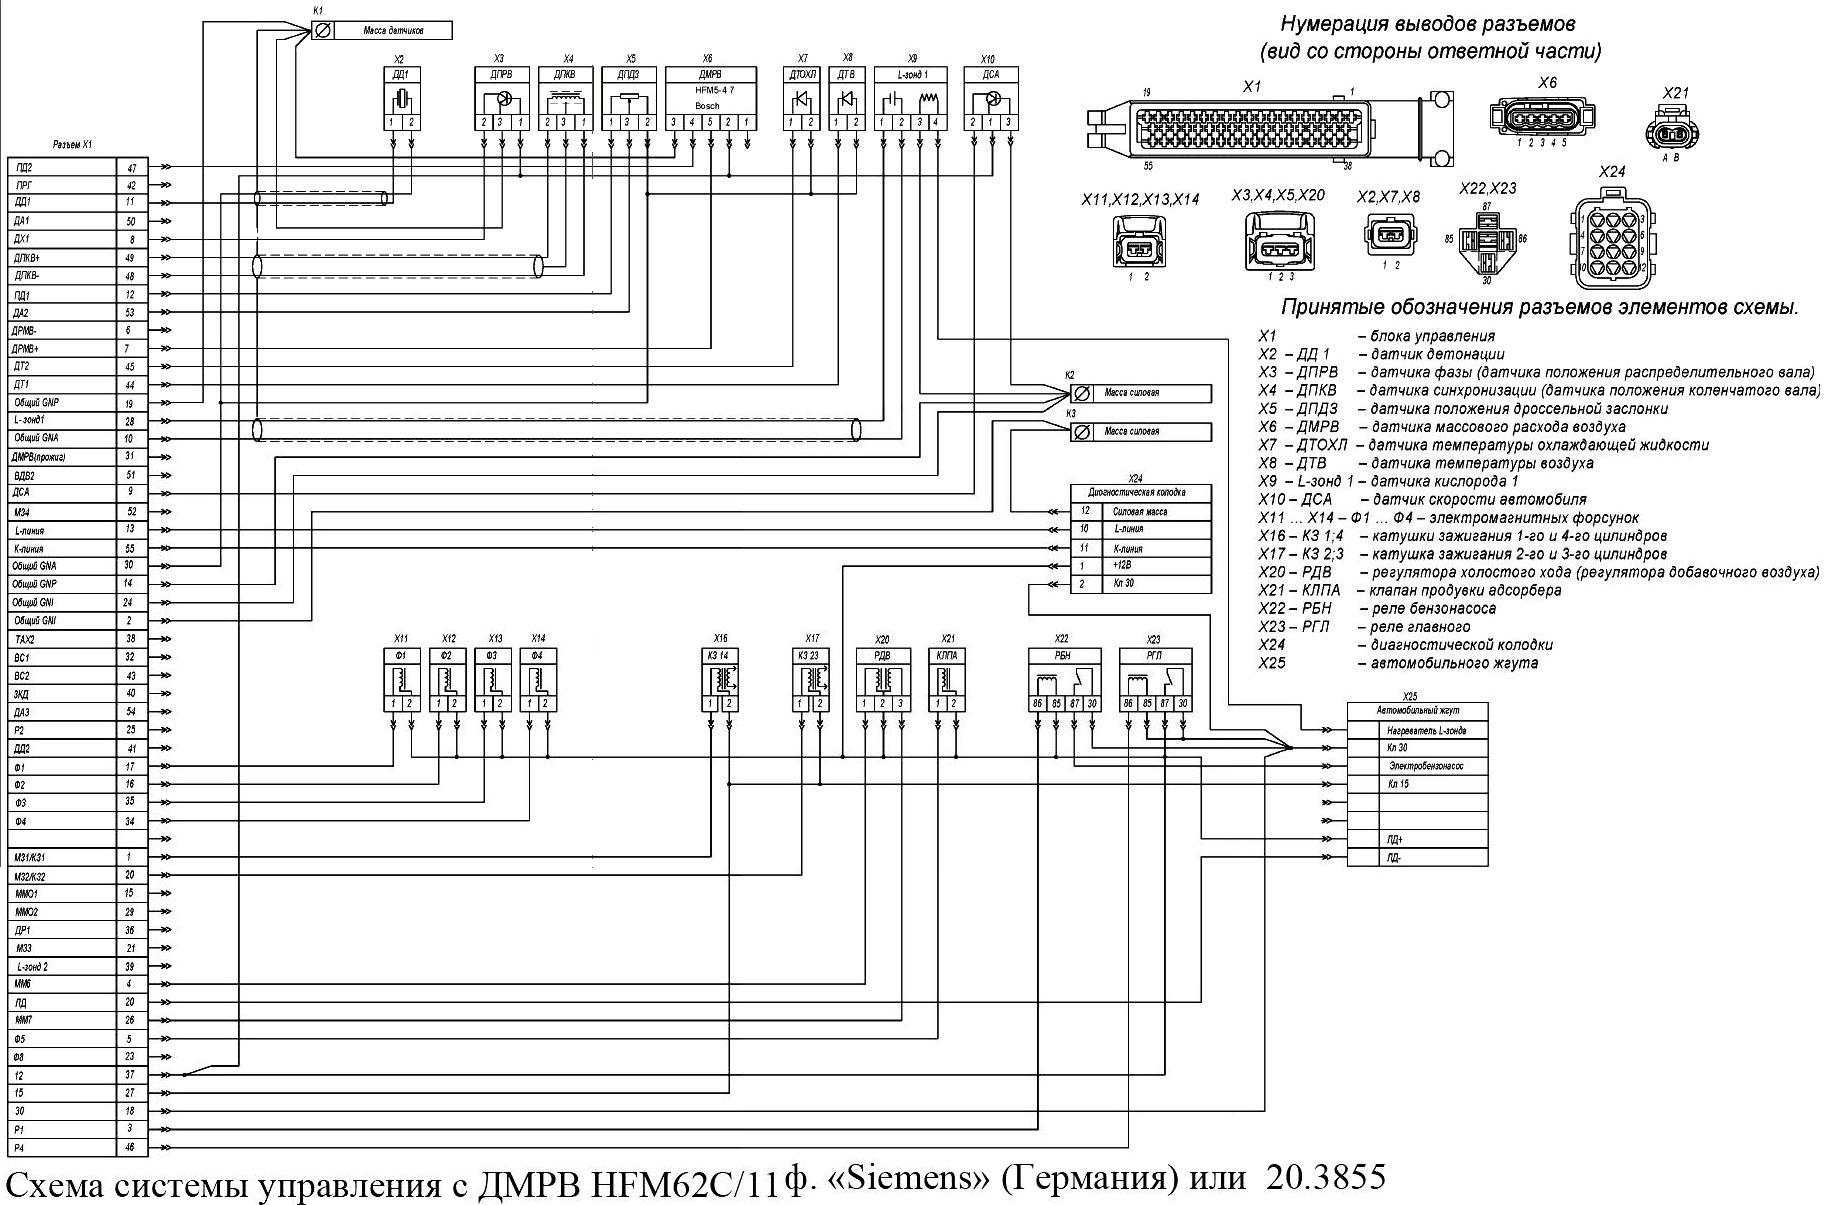 Scheme of SUD ZMZ-405 with MAF HFM62C/11 